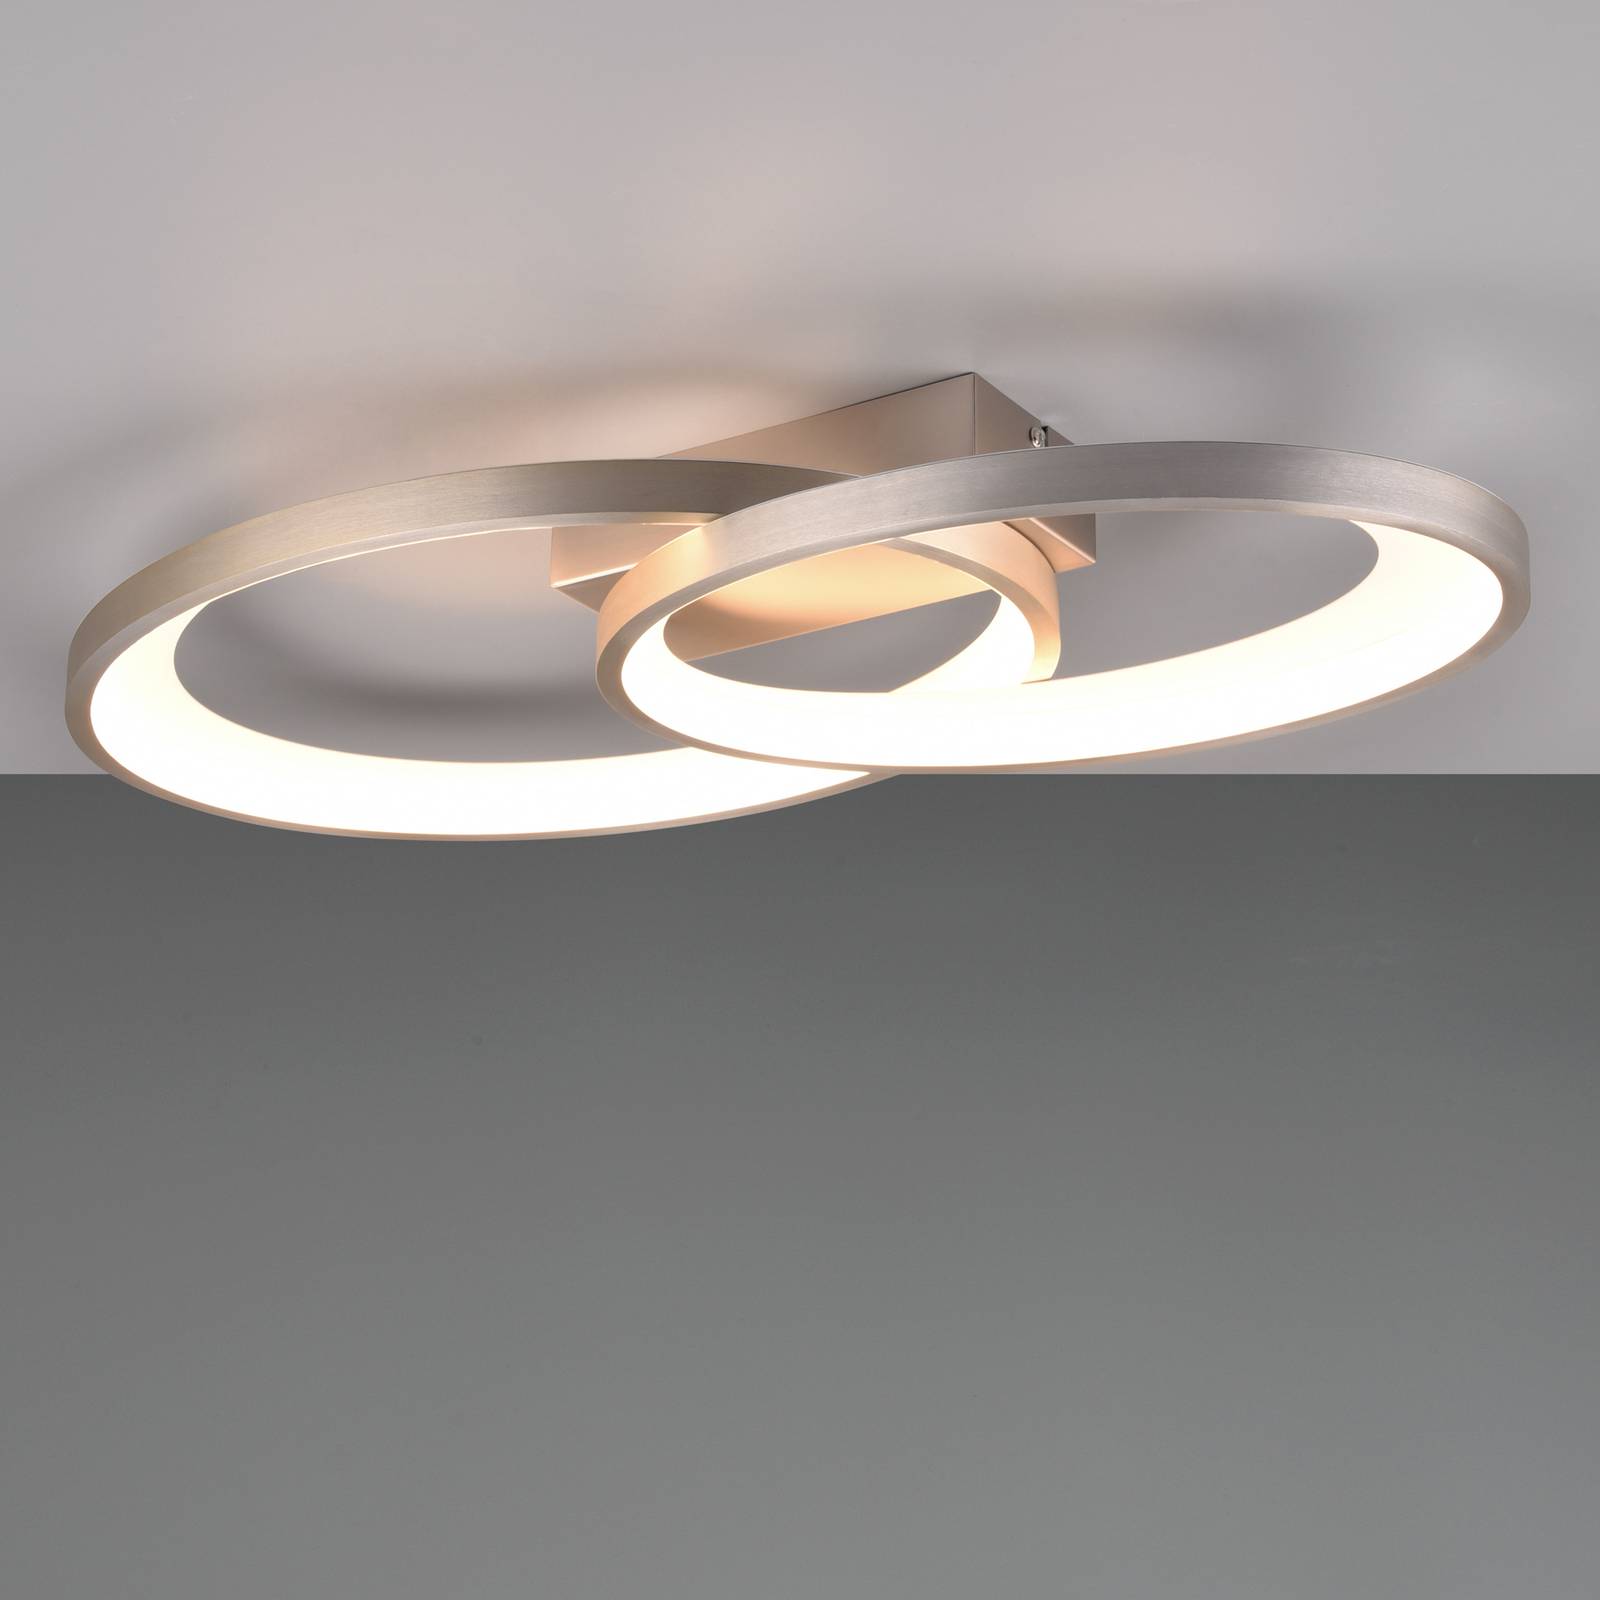 LED-Deckenleuchte Malaga mit 2 Ringen, nickel matt